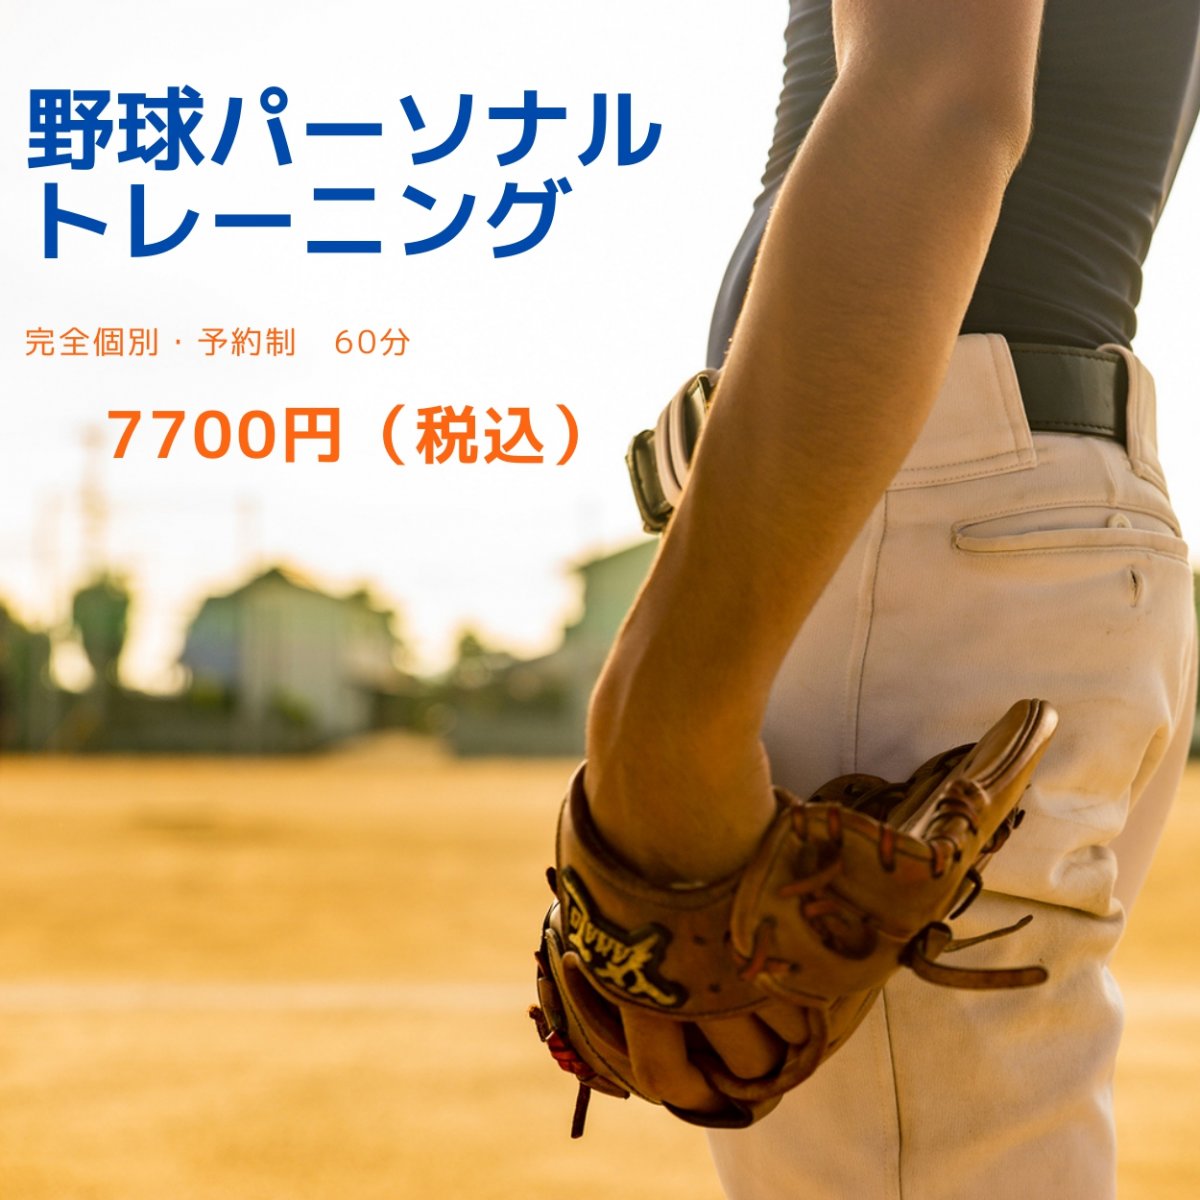 【個別指導】野球パーソナルトレーニング　60分コース